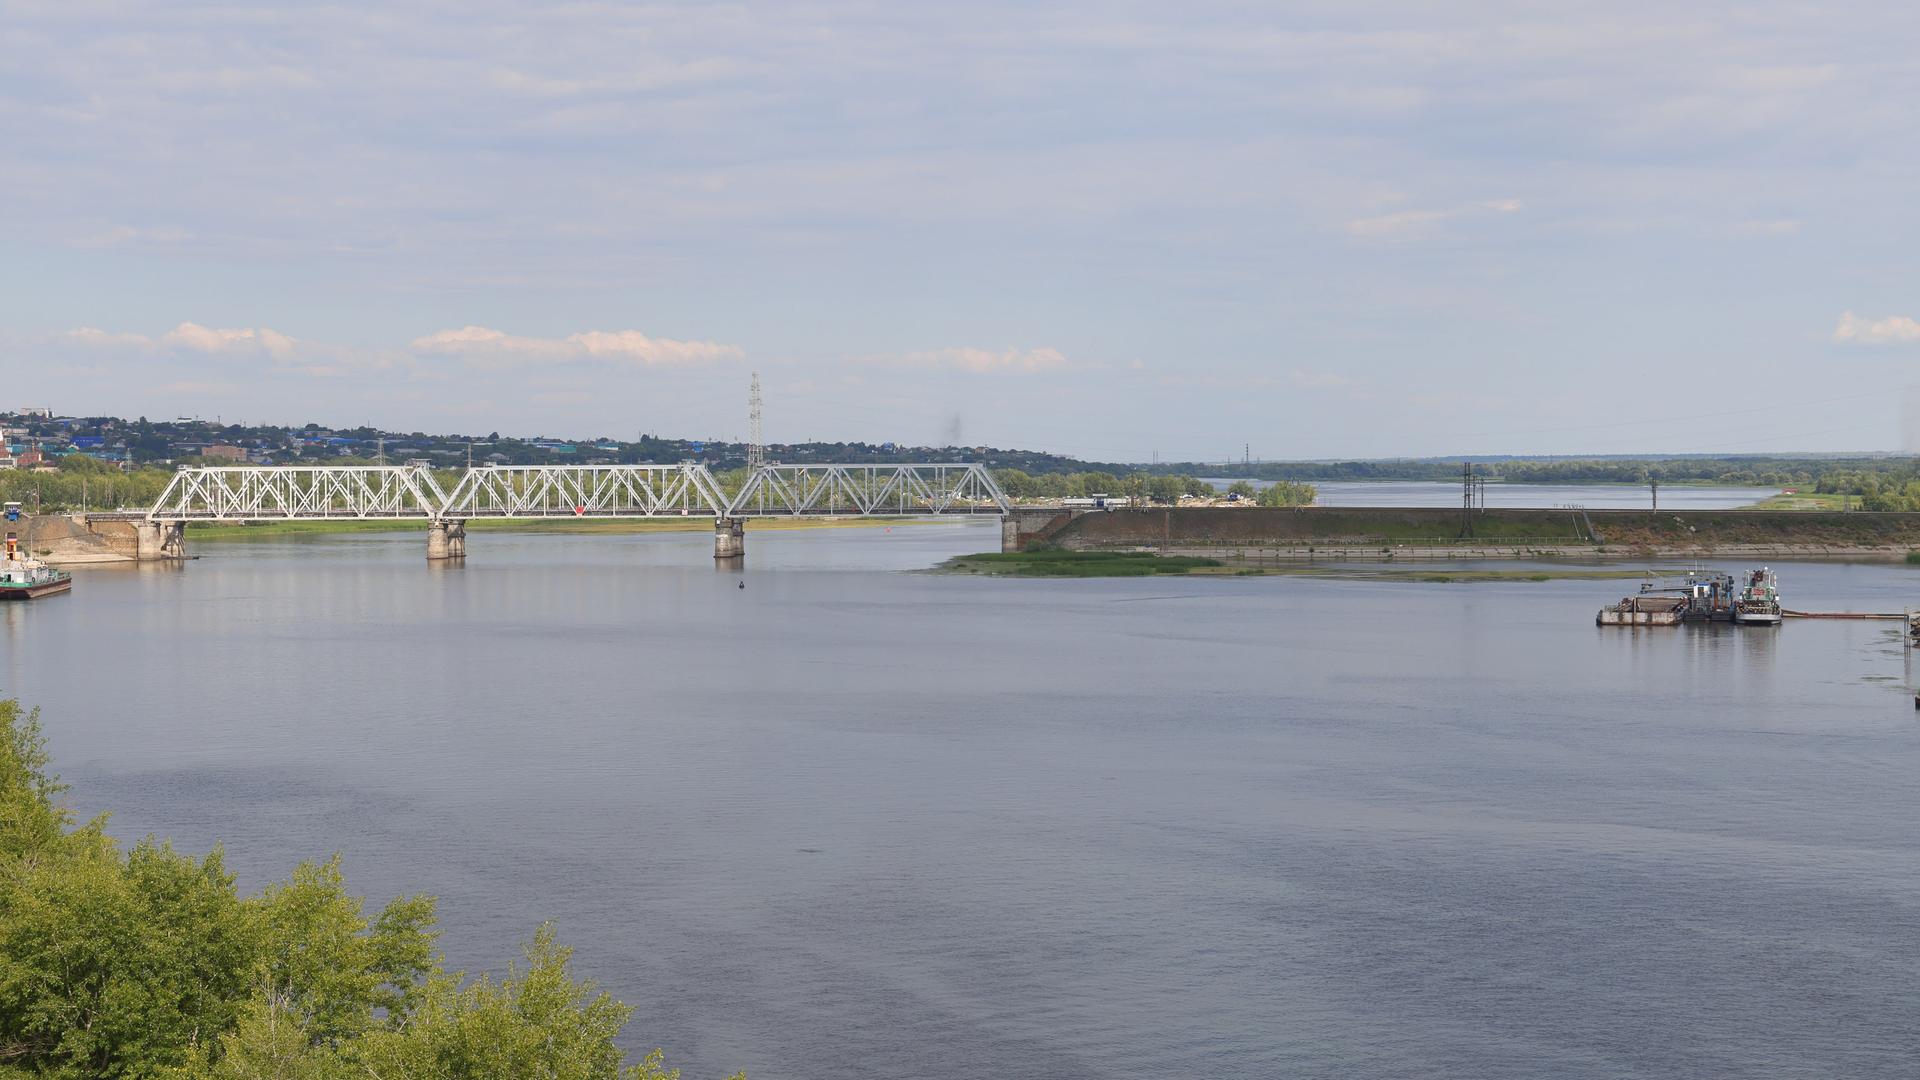 Blick auf eine Eisenbahnbrücke über einem Fluss